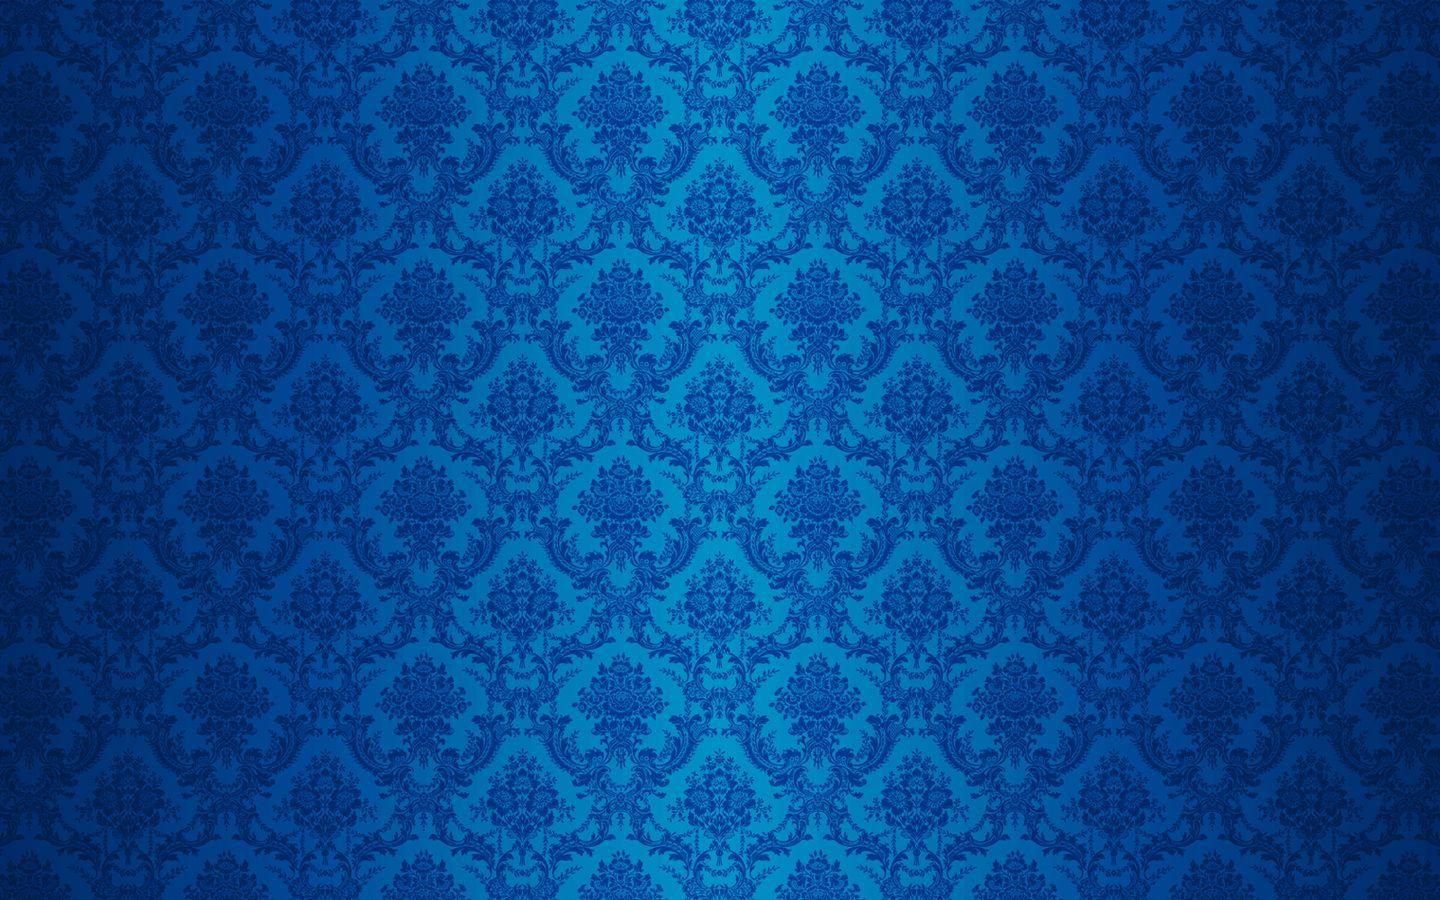 Top những hình ảnh đẹp của Royal Blue Texture Wallpapers sẽ khiến bạn phải trầm trồ khen ngợi. Với độ phân giải cao và hình ảnh chất lượng, những thiết kế nổi bật này sẽ khiến cho màn hình điện thoại của bạn trở nên lung linh và nổi bật hơn bao giờ hết. Hãy sẵn sàng để đắm chìm trước vẻ đẹp của những hình ảnh này.